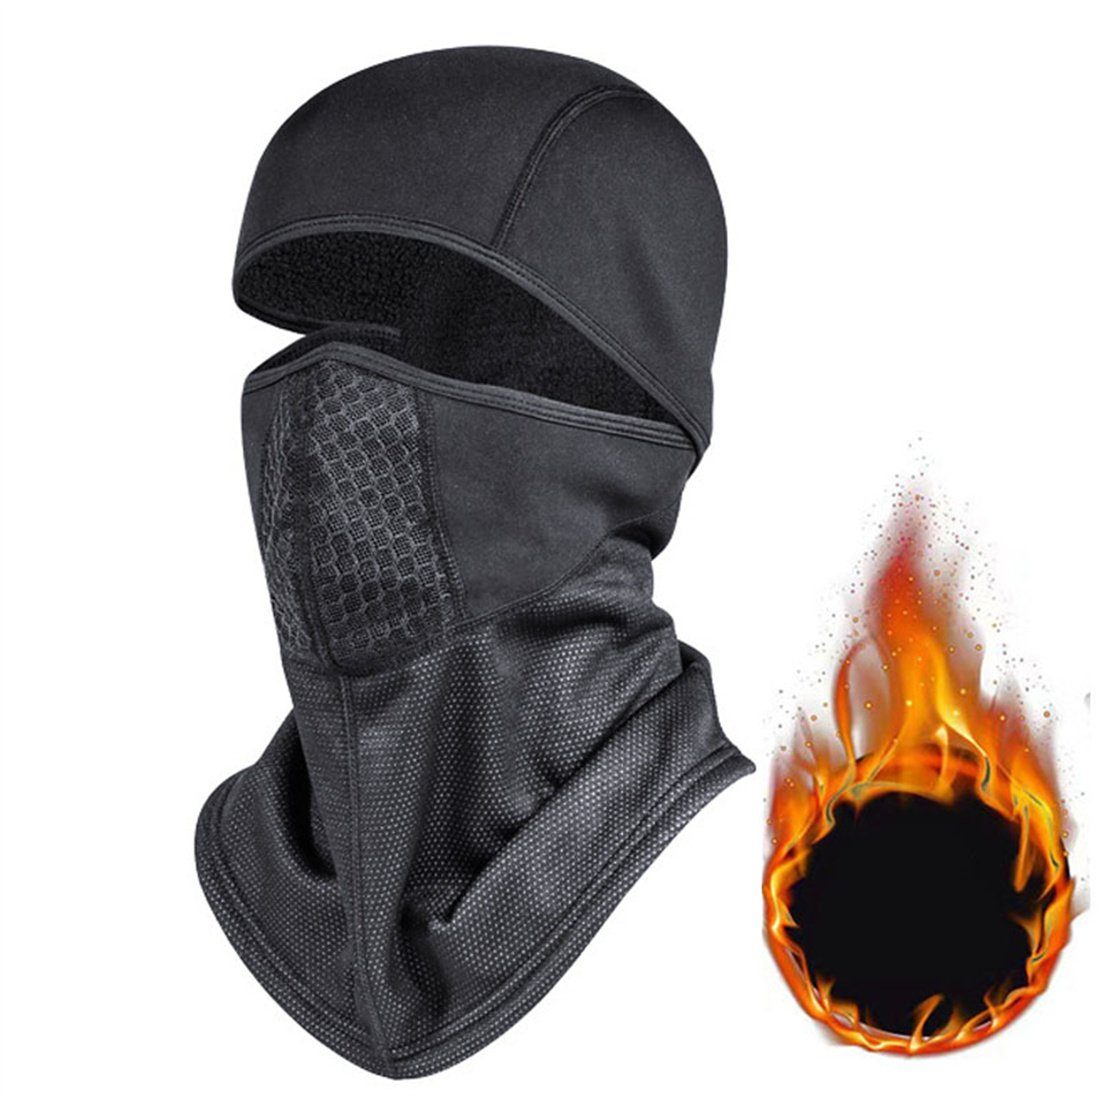 DÖRÖY Sturmhaube Winter-Ski-Maske, Outdoor-Radfahren Halsschutz Kopfbedeckung, unisex Schwarz